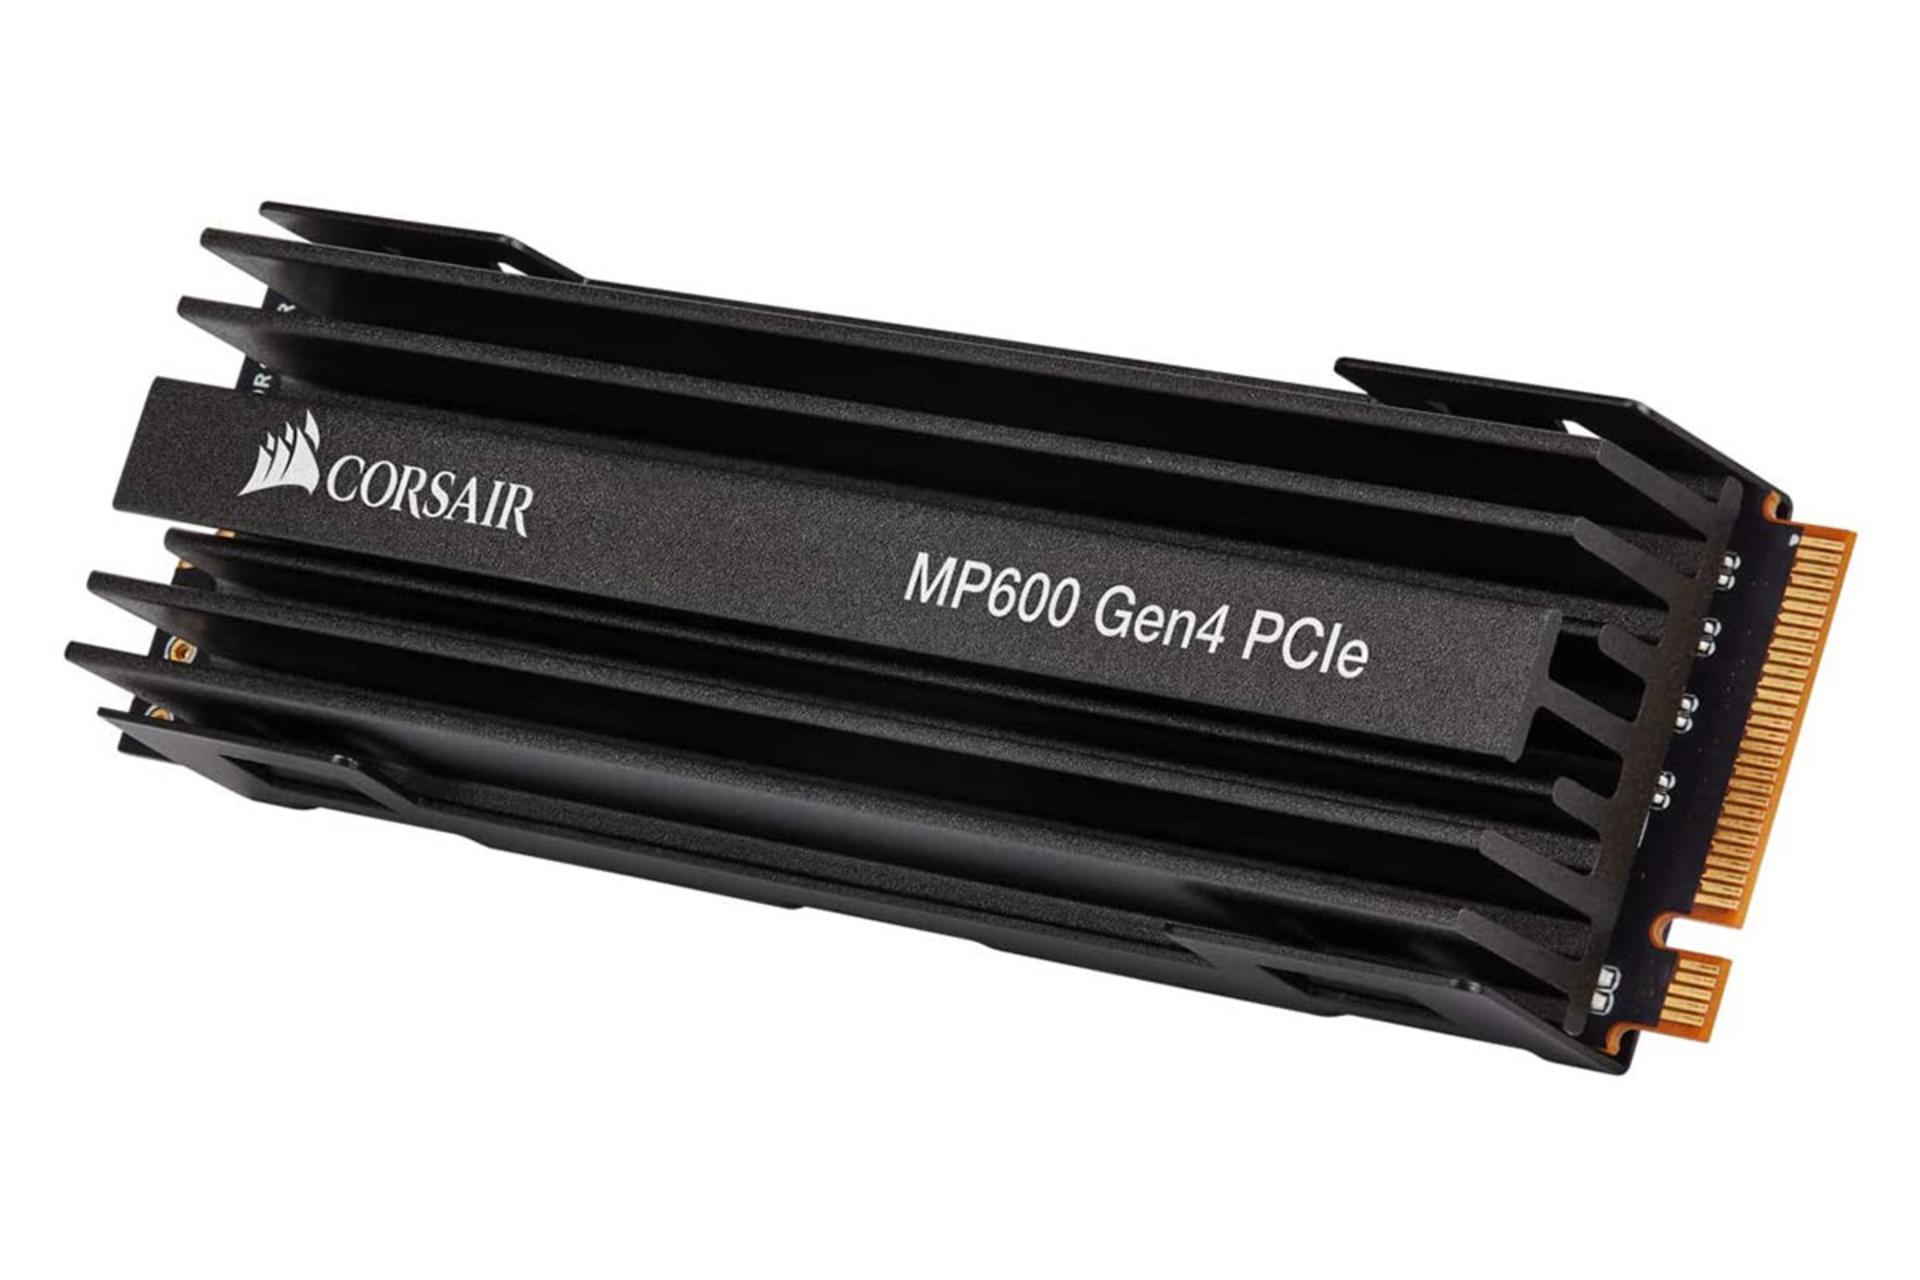 نمای نیمرخ حافظه اس اس دی کورسیر فورس MP600